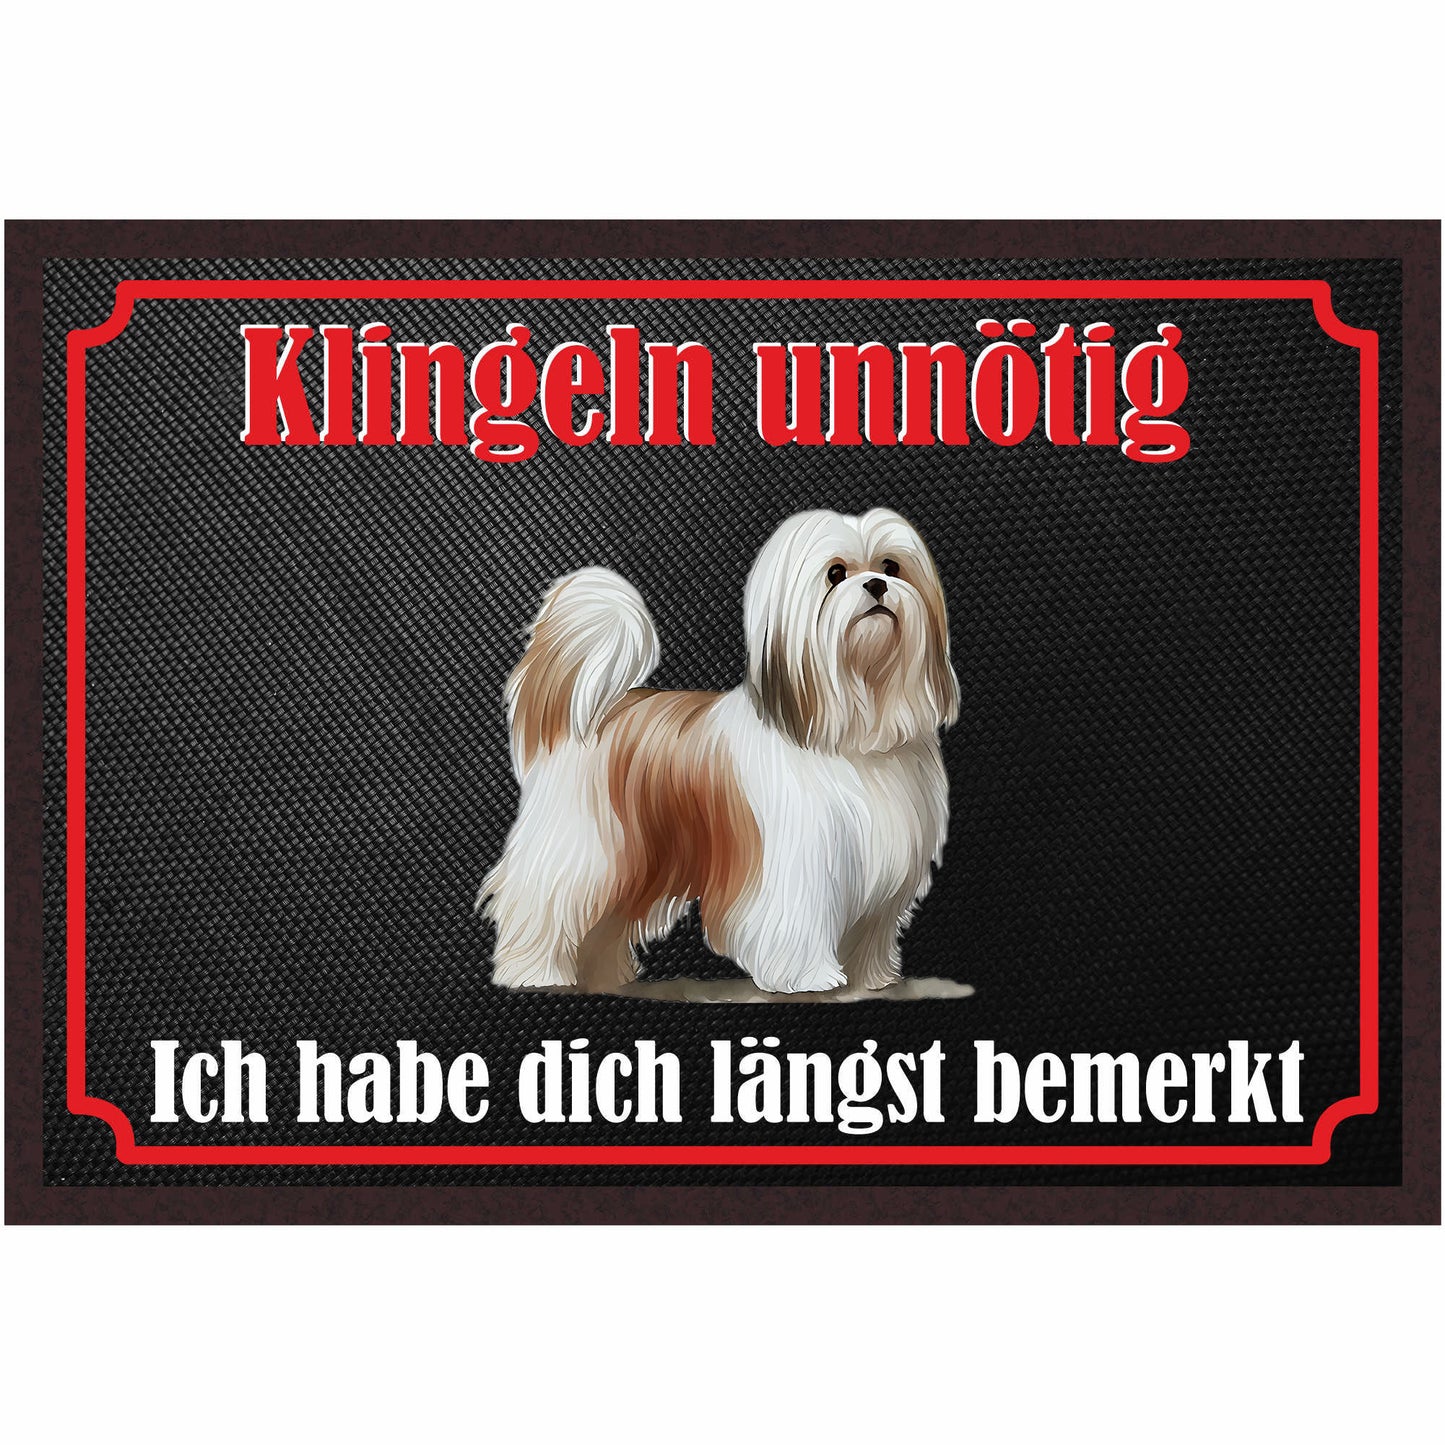 Fussmatte Hund - Malteser - 50x35 cm mit lustigem Spruch